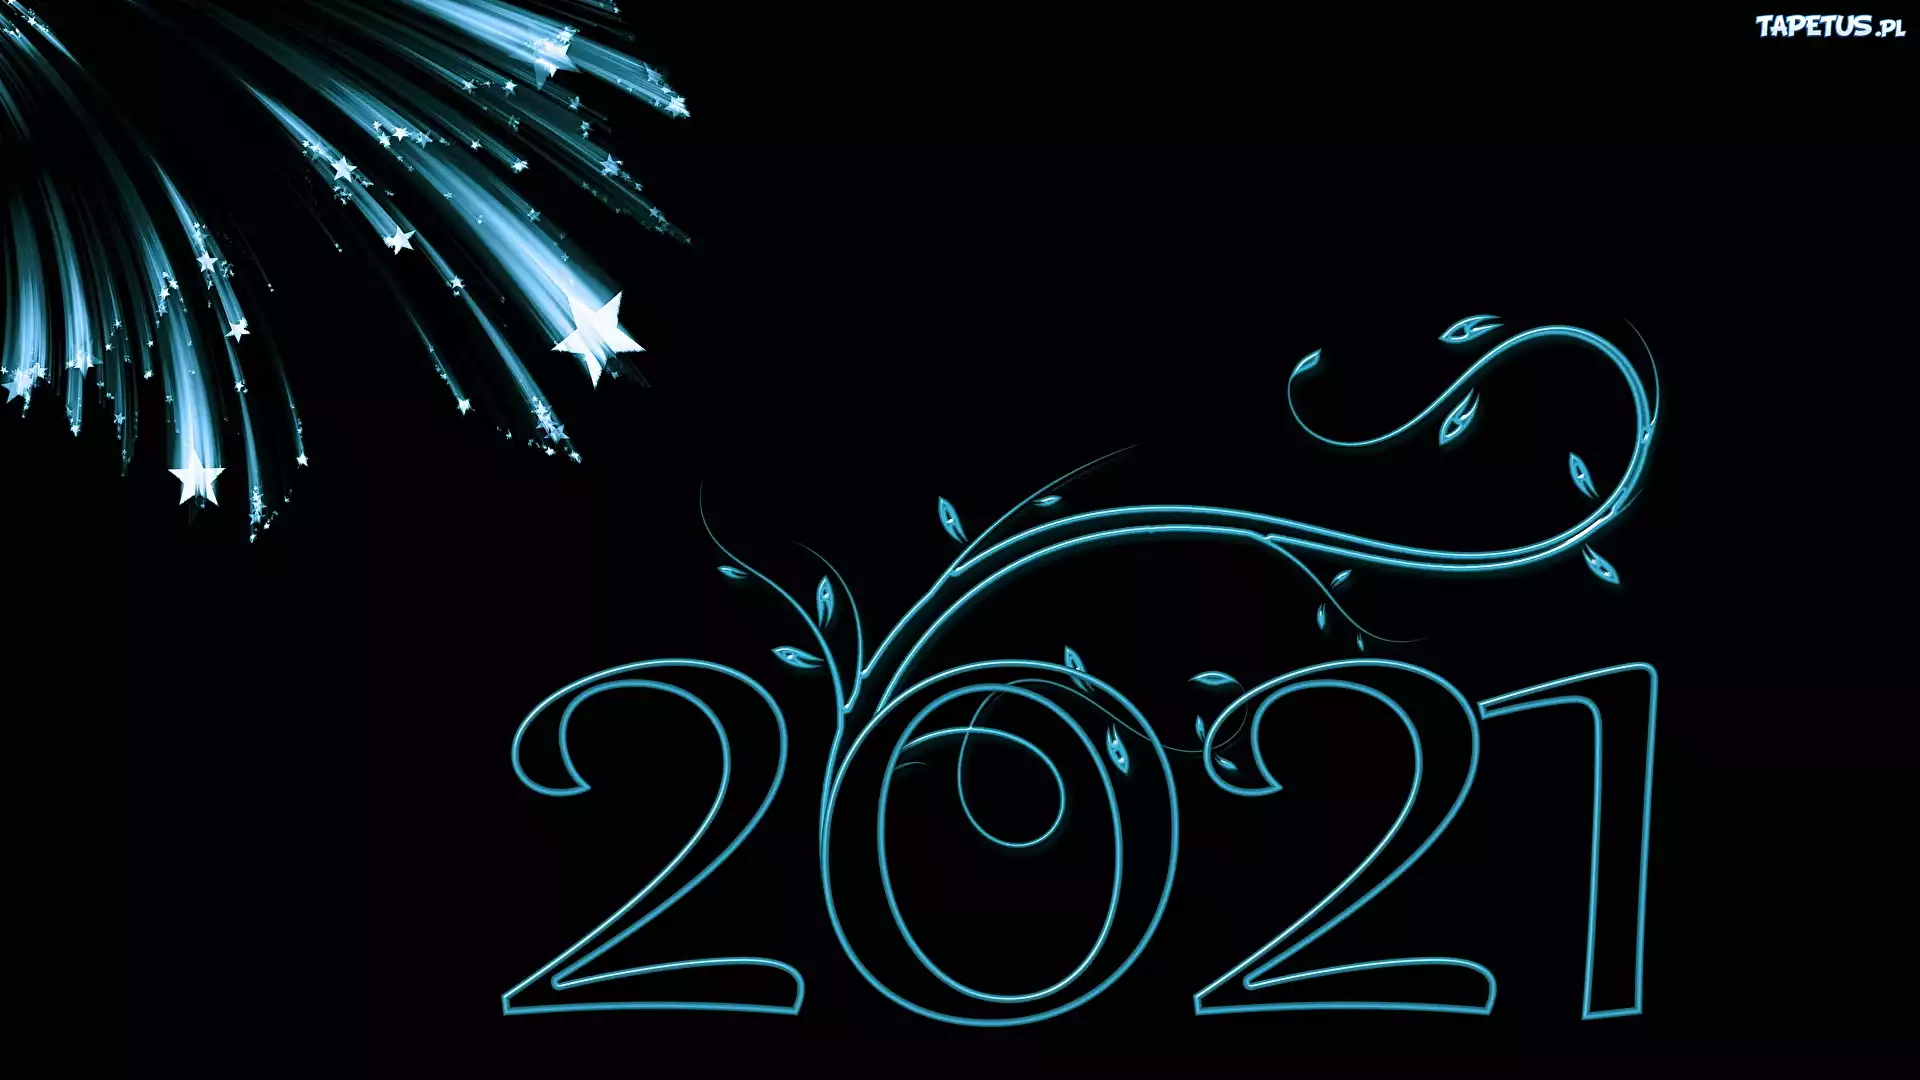 Nowy Rok, 2021, Cyfry, Fajerwerki, Niebiesko-czarna, Grafika 2D